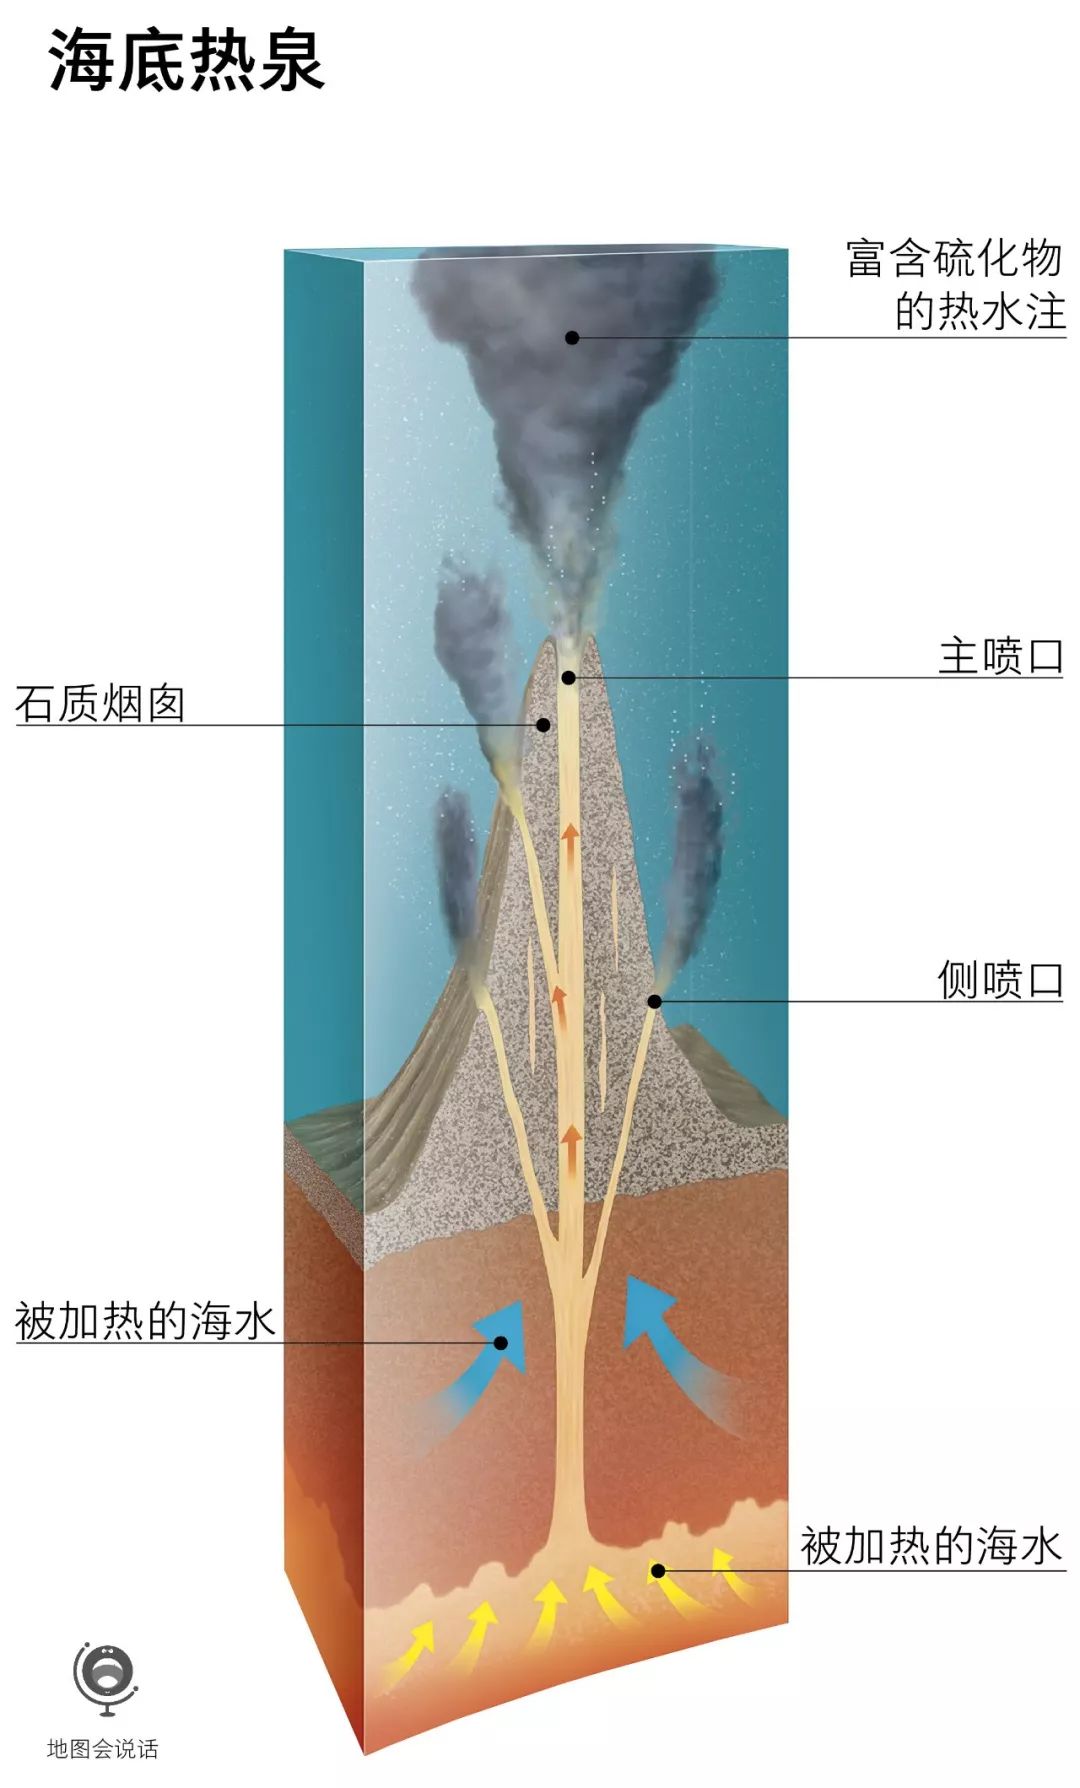 火山形成的海底热泉可以提供多种矿物质,相比同样深度的其它海底